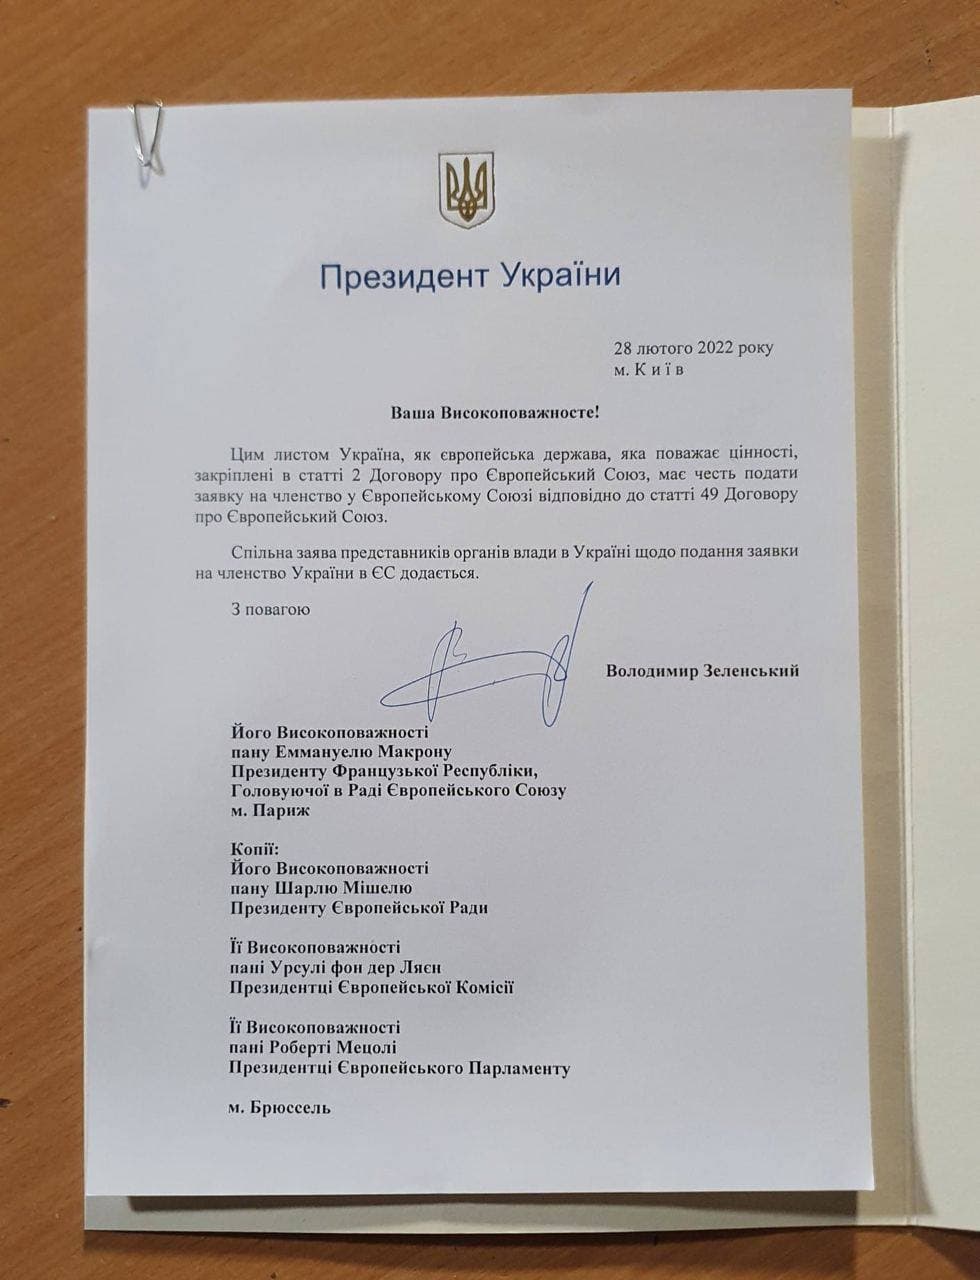 ИСТОРИЧЕСКИЙ ДЕНЬ: Украина подала заявку в ЕС - Президент Владимир Зеленский подписал документ